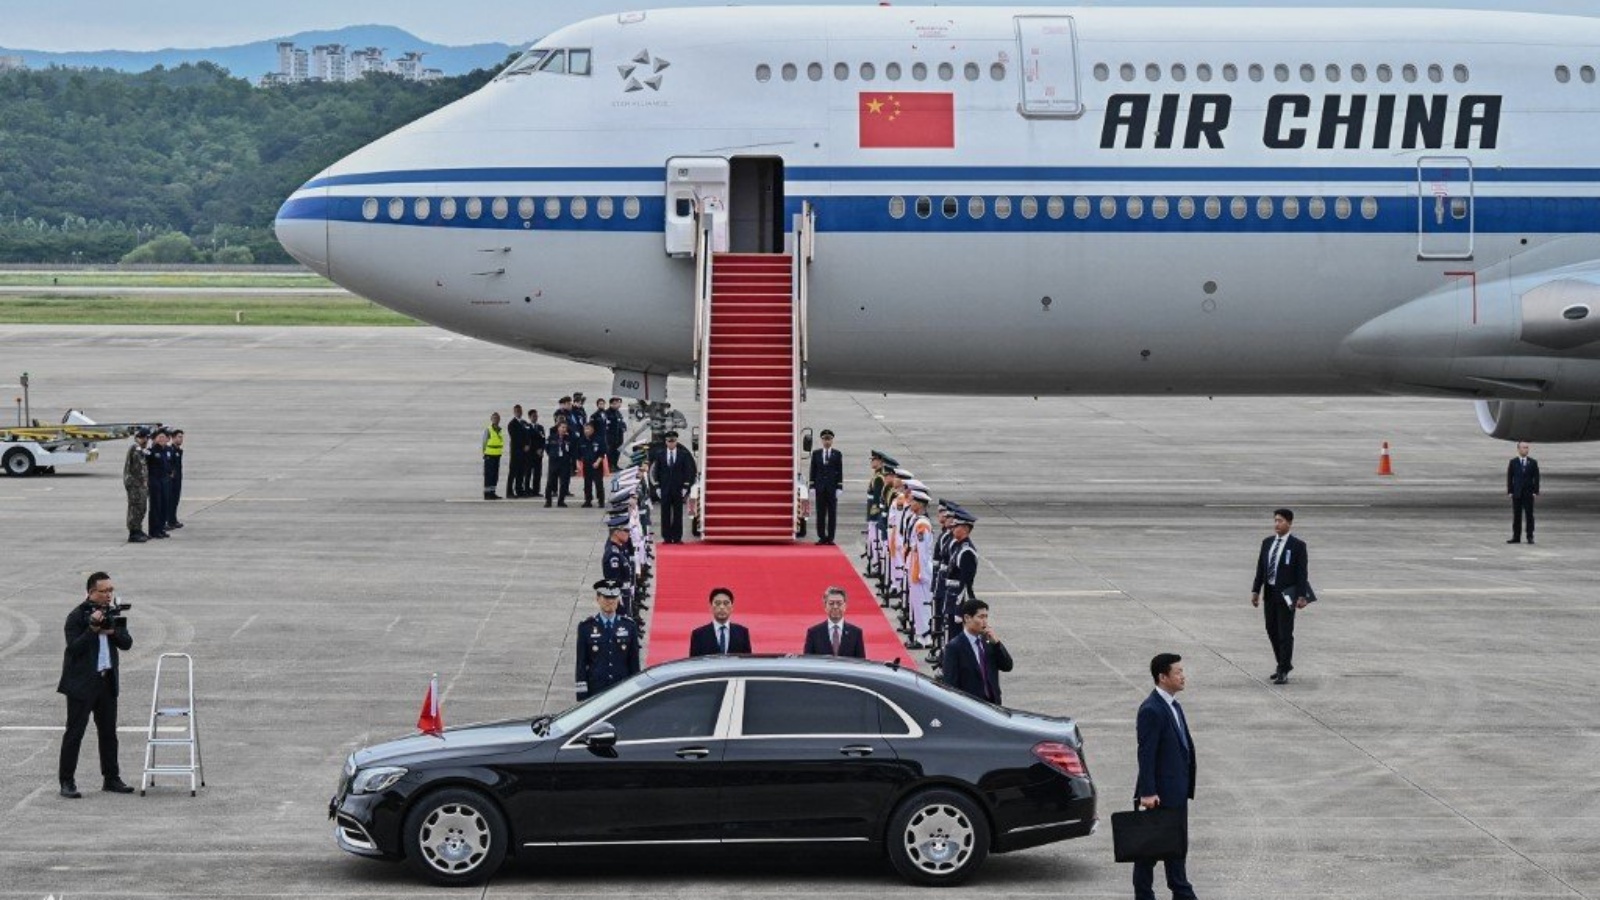 رئيسا وزراء الصين واليابان يصلان إلى سيول الأحد للمشاركة في قمة ثلاثية مع رئيس كوريا الجنوبية